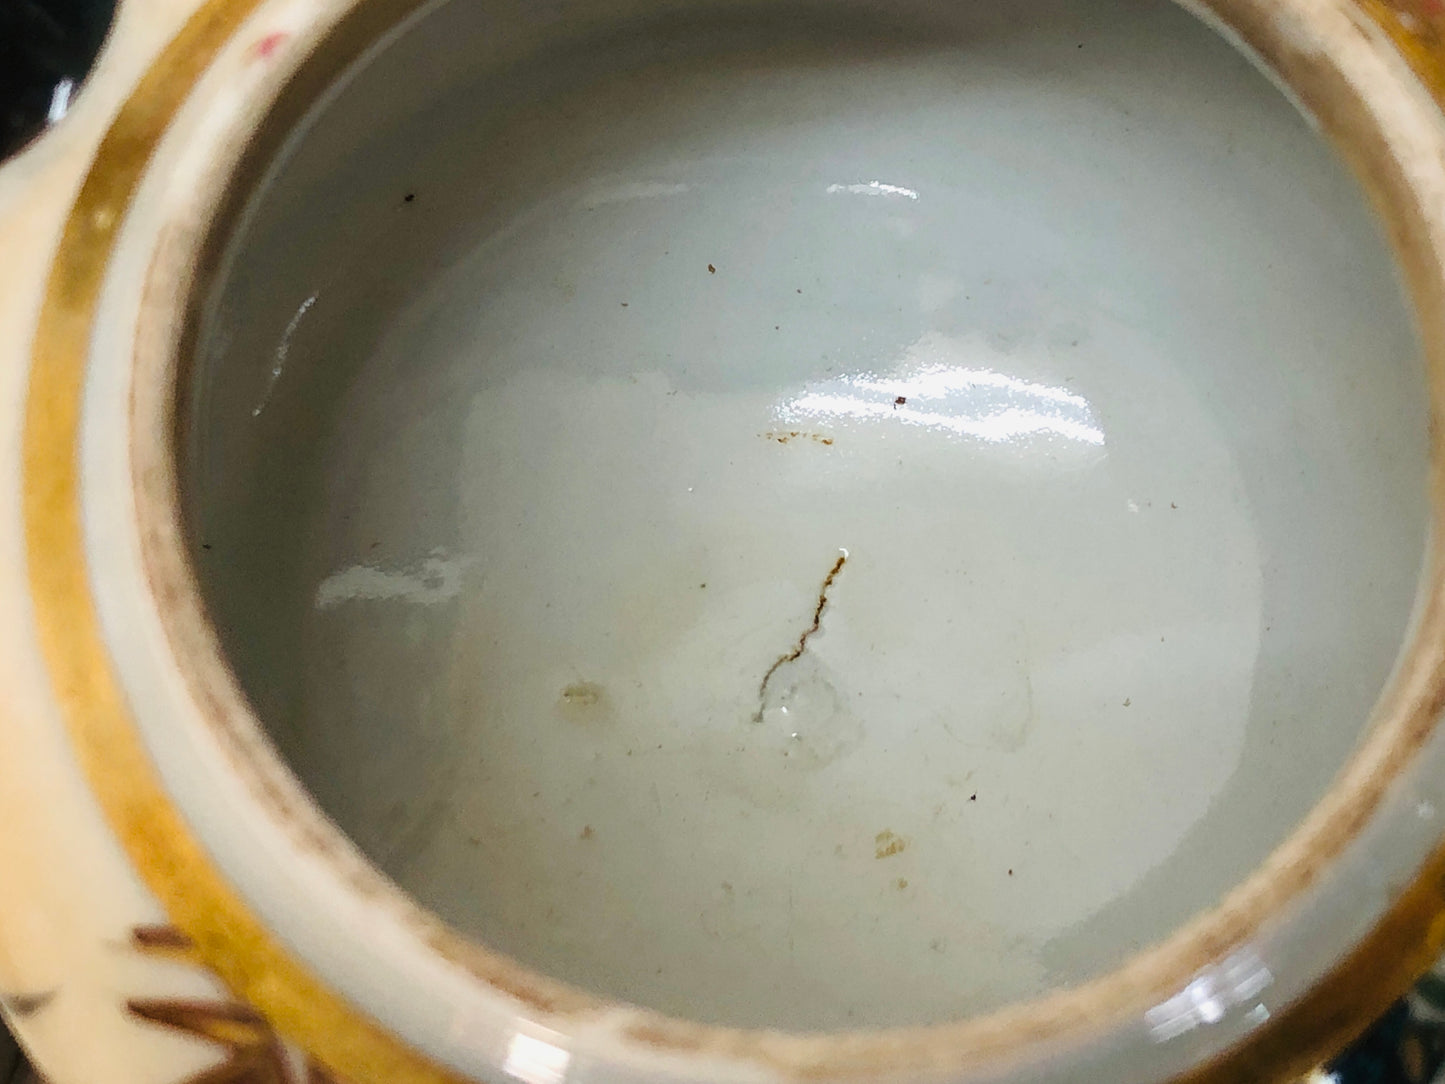 Y3541 KYUSU Kutani-ware Teapot pot color picture Tea Ceremony Japan antique